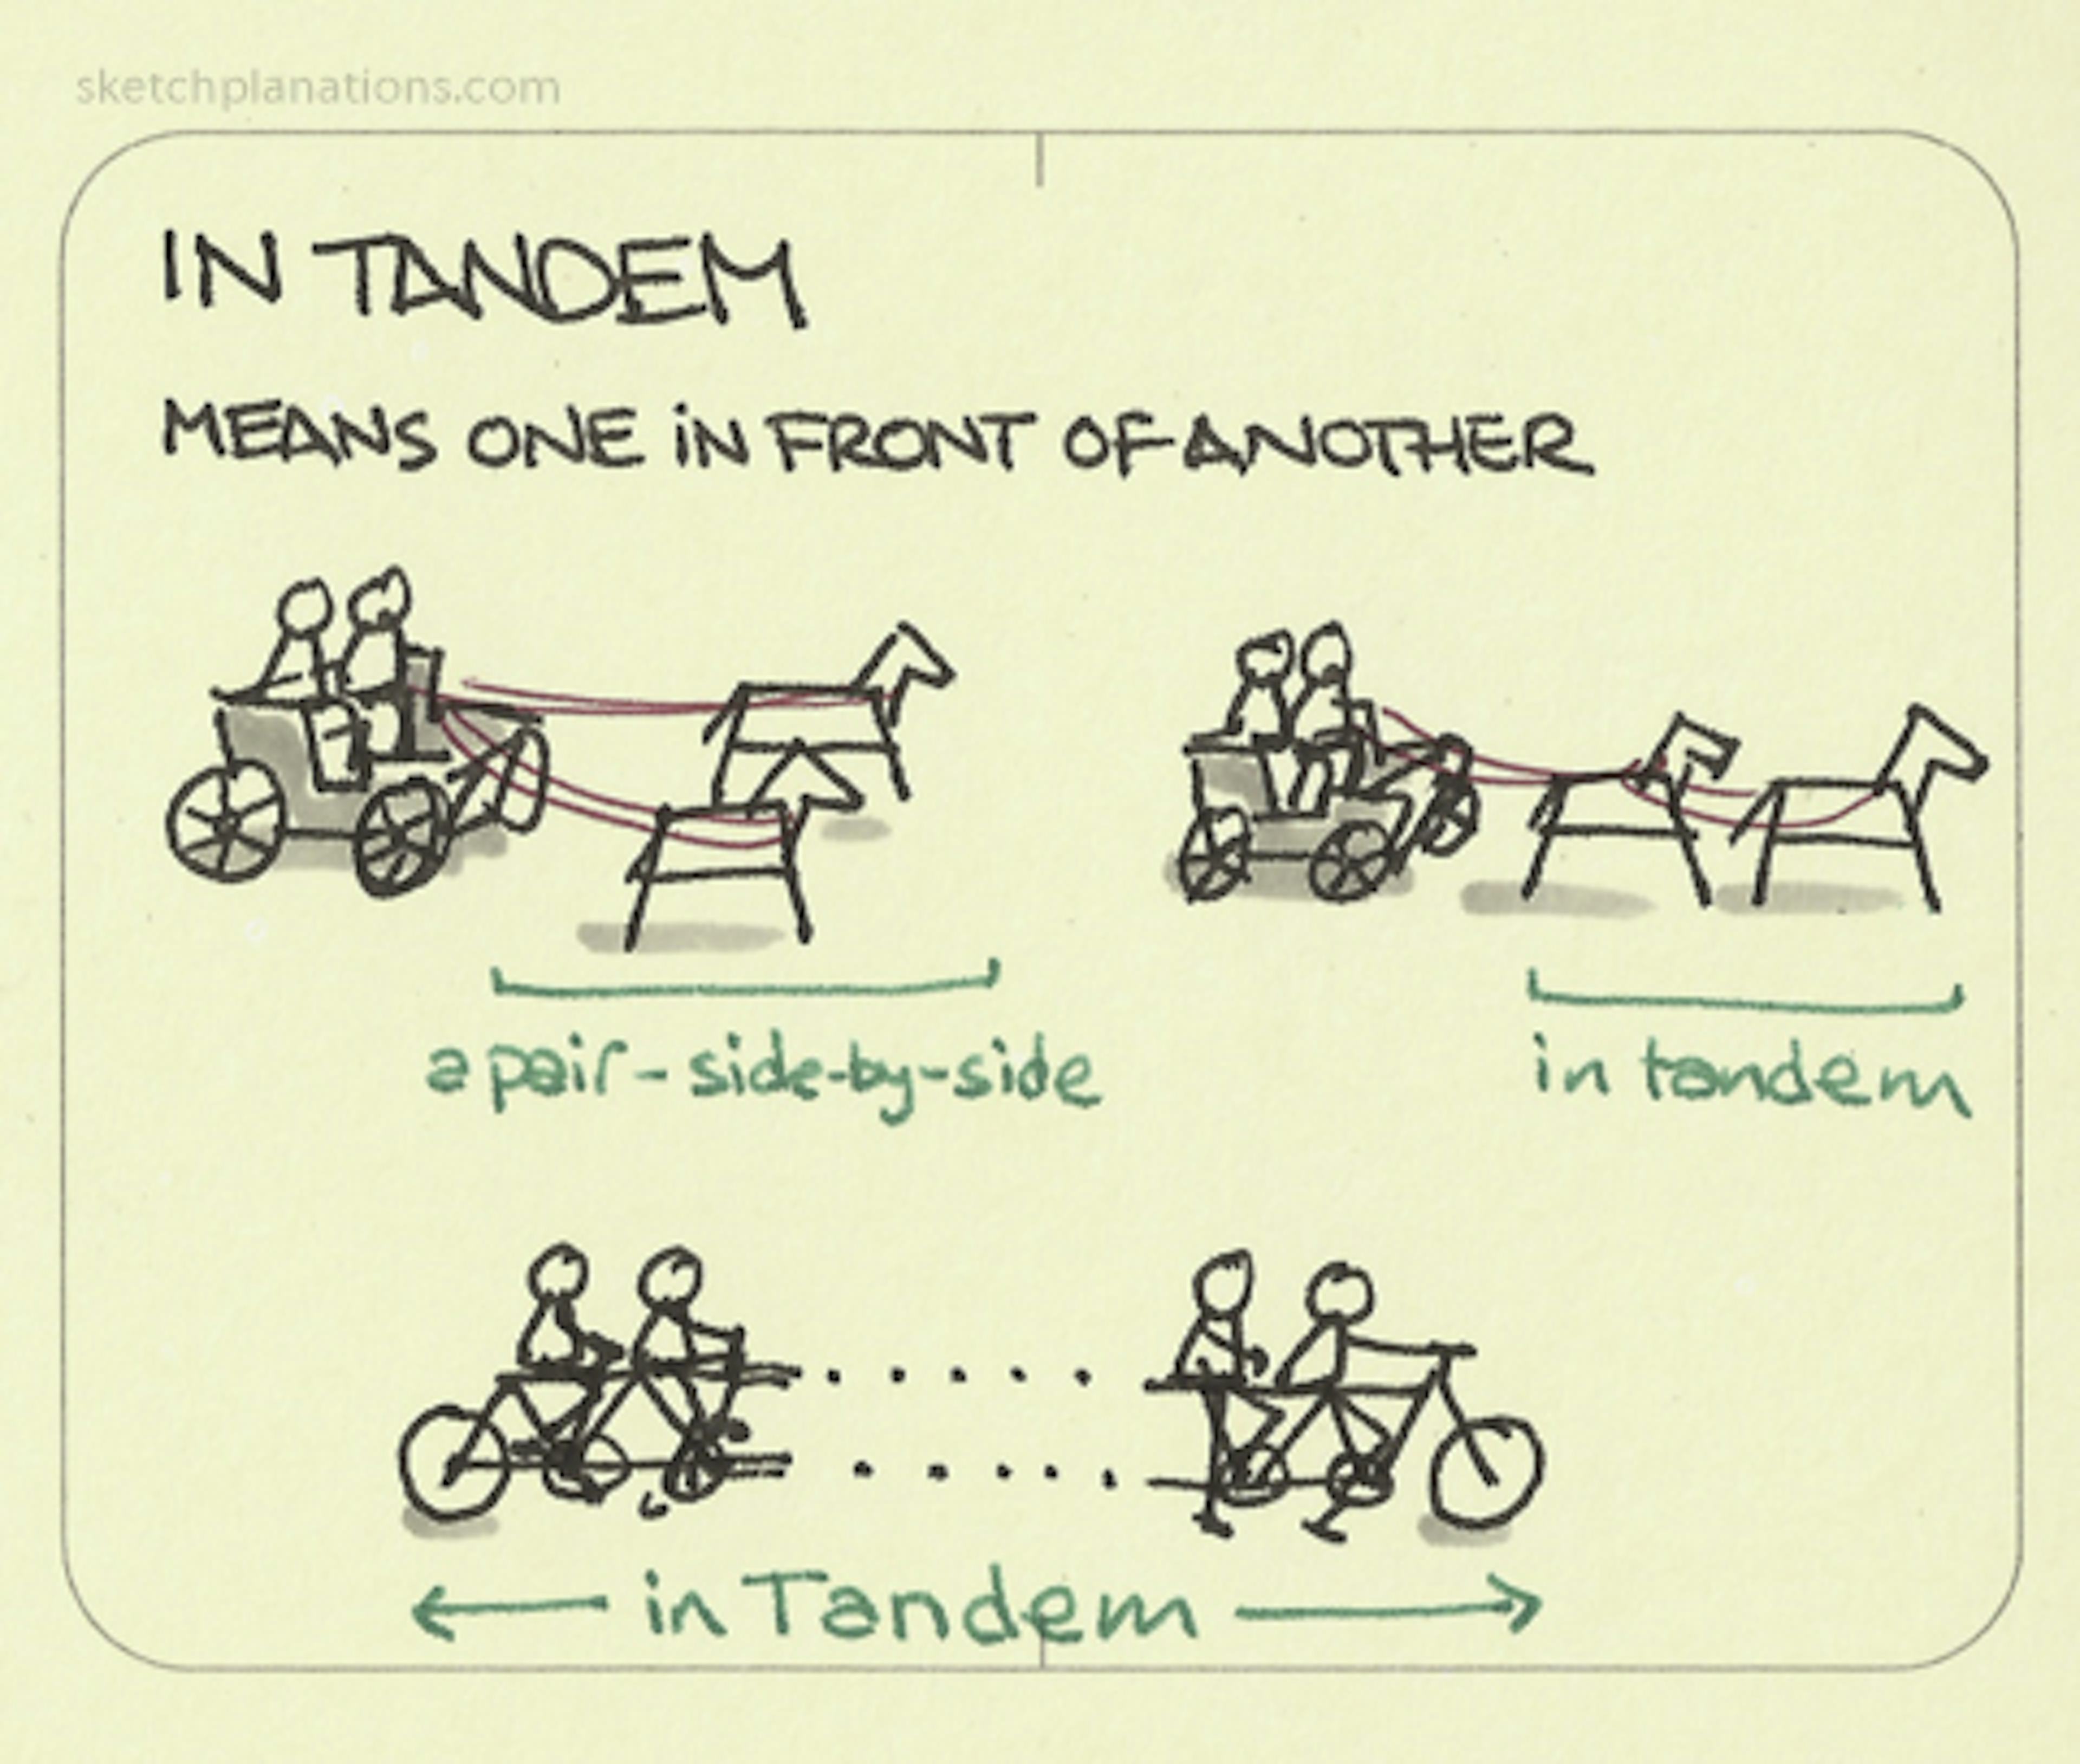 In tandem - Sketchplanations